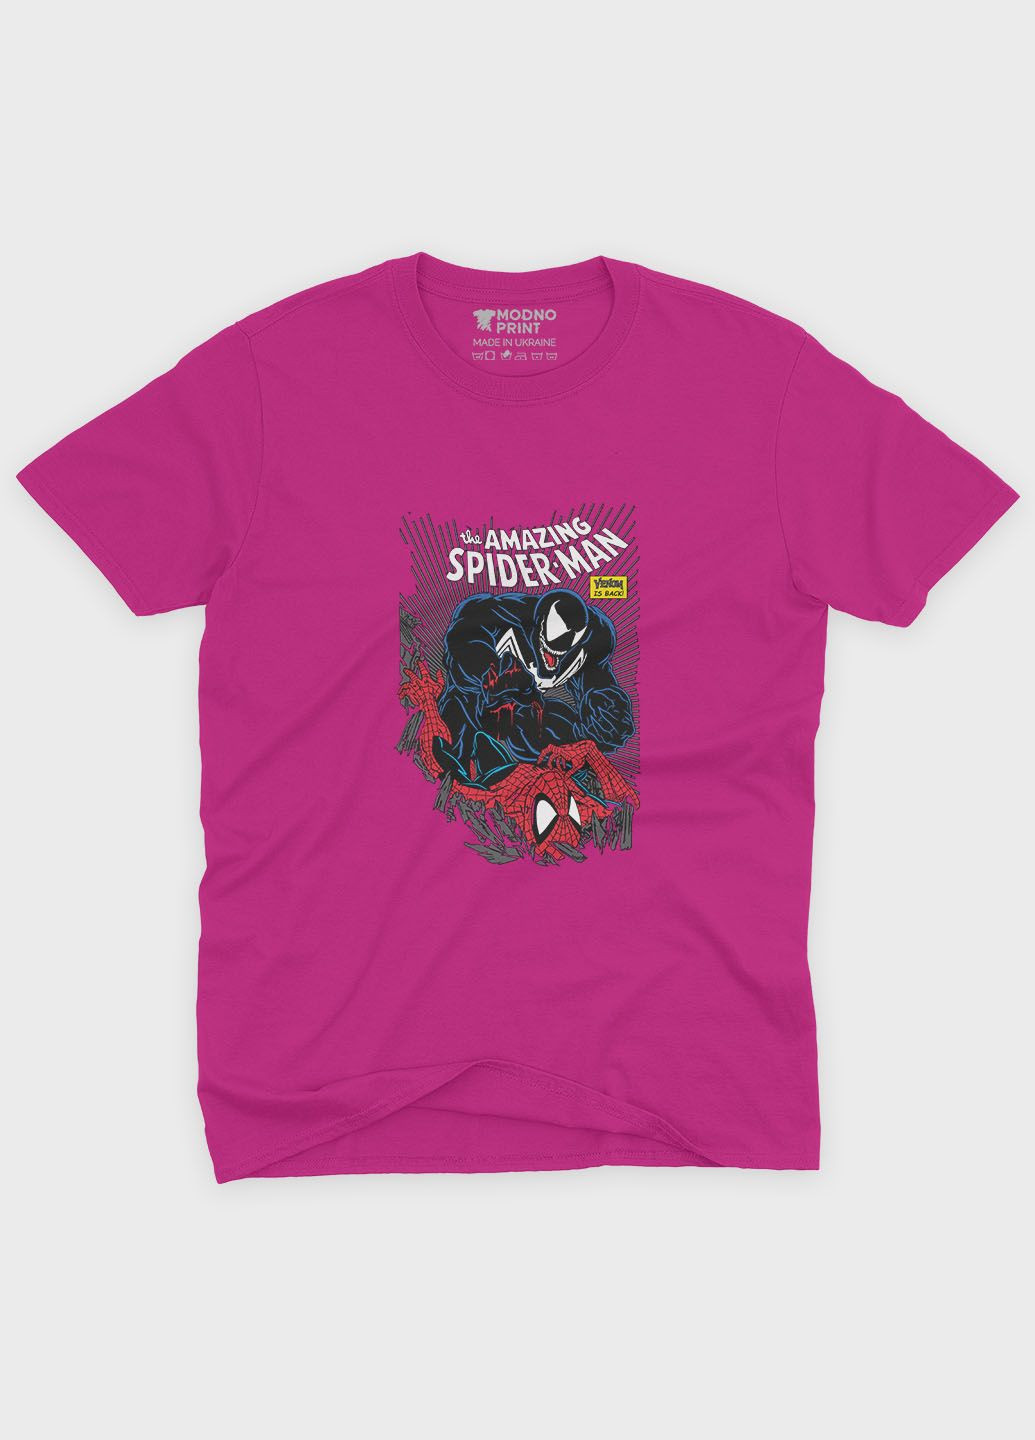 Розовая демисезонная футболка для девочки с принтом супергероя - человек-паук (ts001-1-fuxj-006-014-052-g) Modno